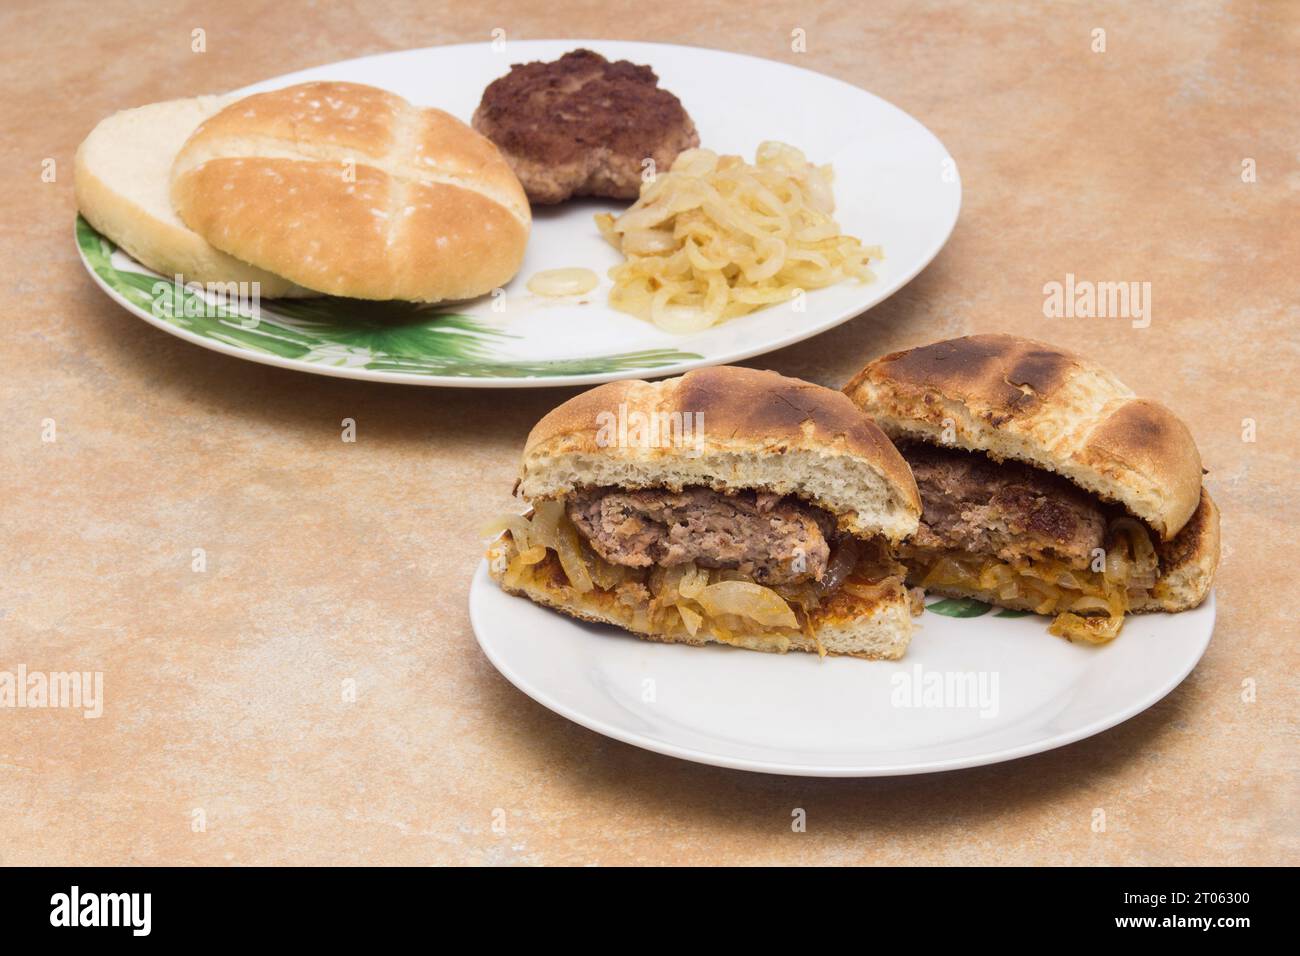 Uno split hamburger rivela la sua succosa carne su un piatto, con un pezzo di hamburger tostato, pane e cipolle dorate sullo sfondo. Cuocete la vostra OW Foto Stock